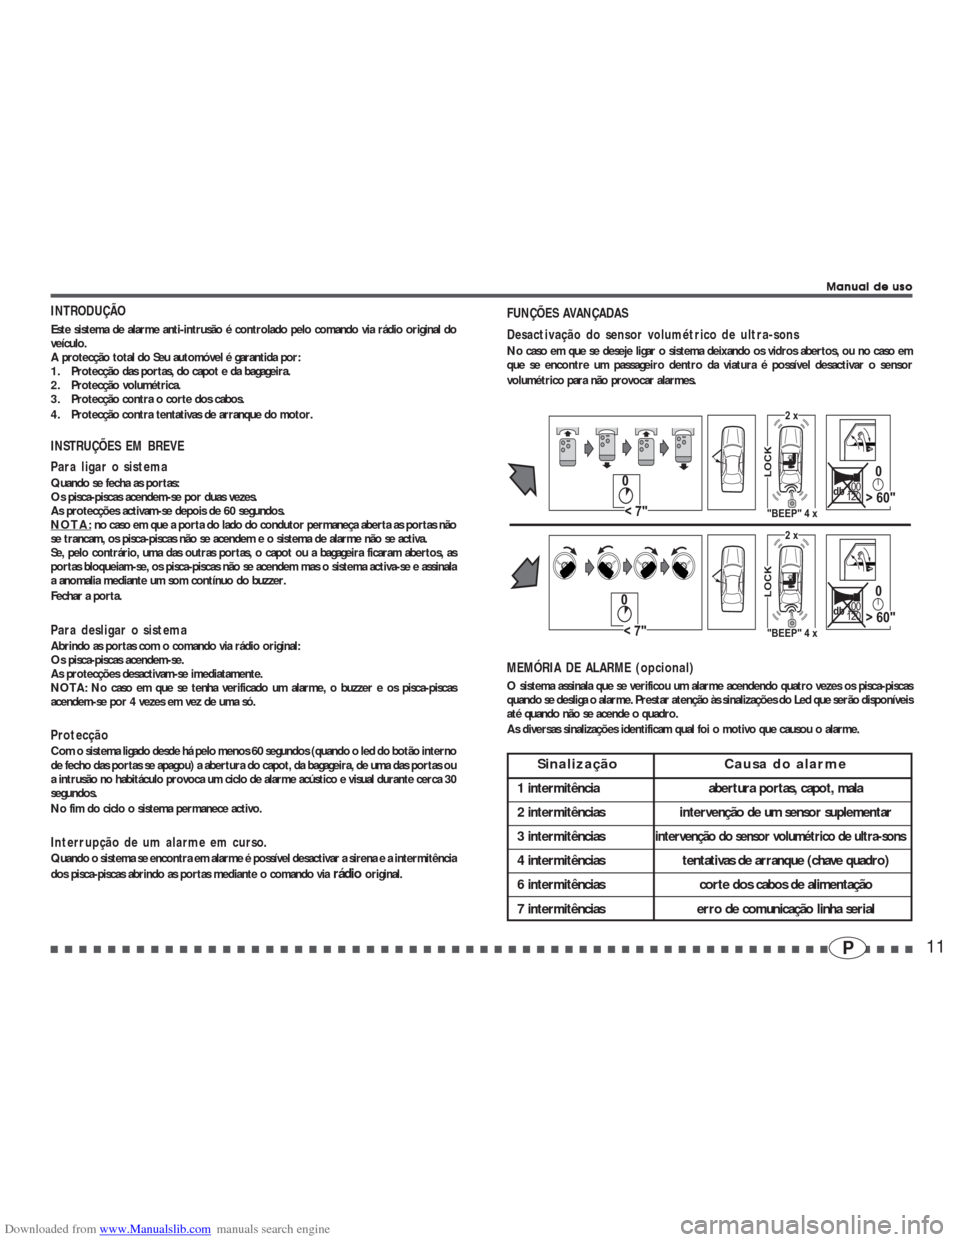 RENAULT CLIO 2002 X65 / 2.G Alarm 7895-7897 User Guide Downloaded from www.Manualslib.com manuals search engine 11P
Manual de uso Manual de usoManual de uso Manual de uso
Manual de uso
INTRODUÇÃO
Este sistema de alarme anti-intrusão é controlado pelo 